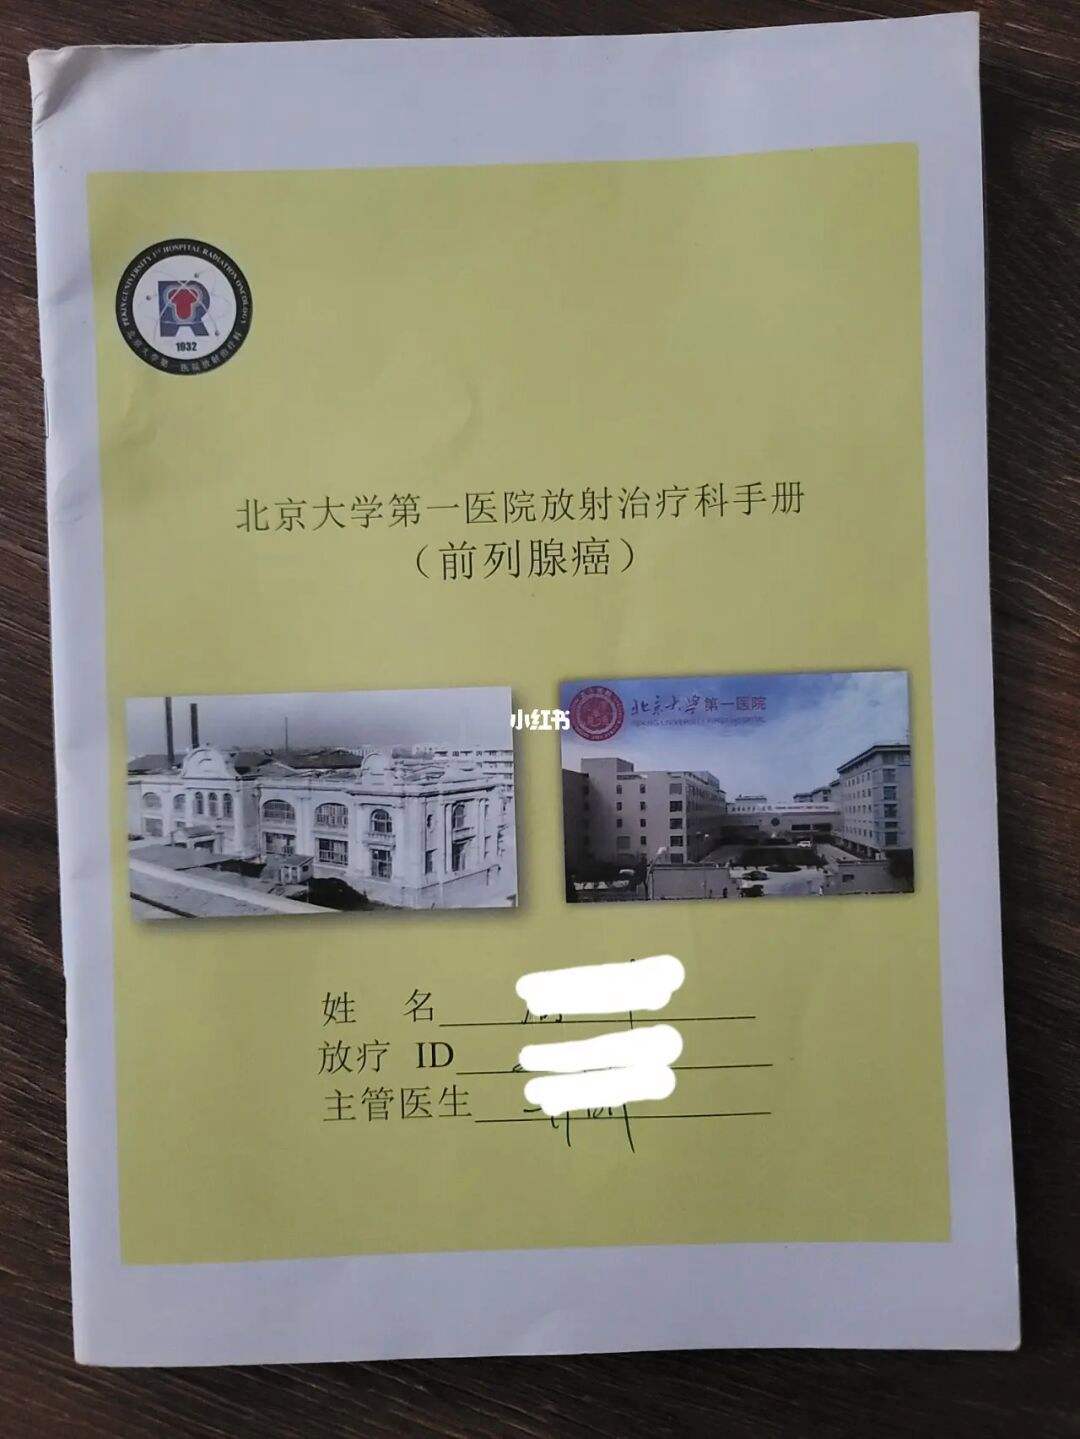 包含北京大学第一医院办法多,价格不贵的词条